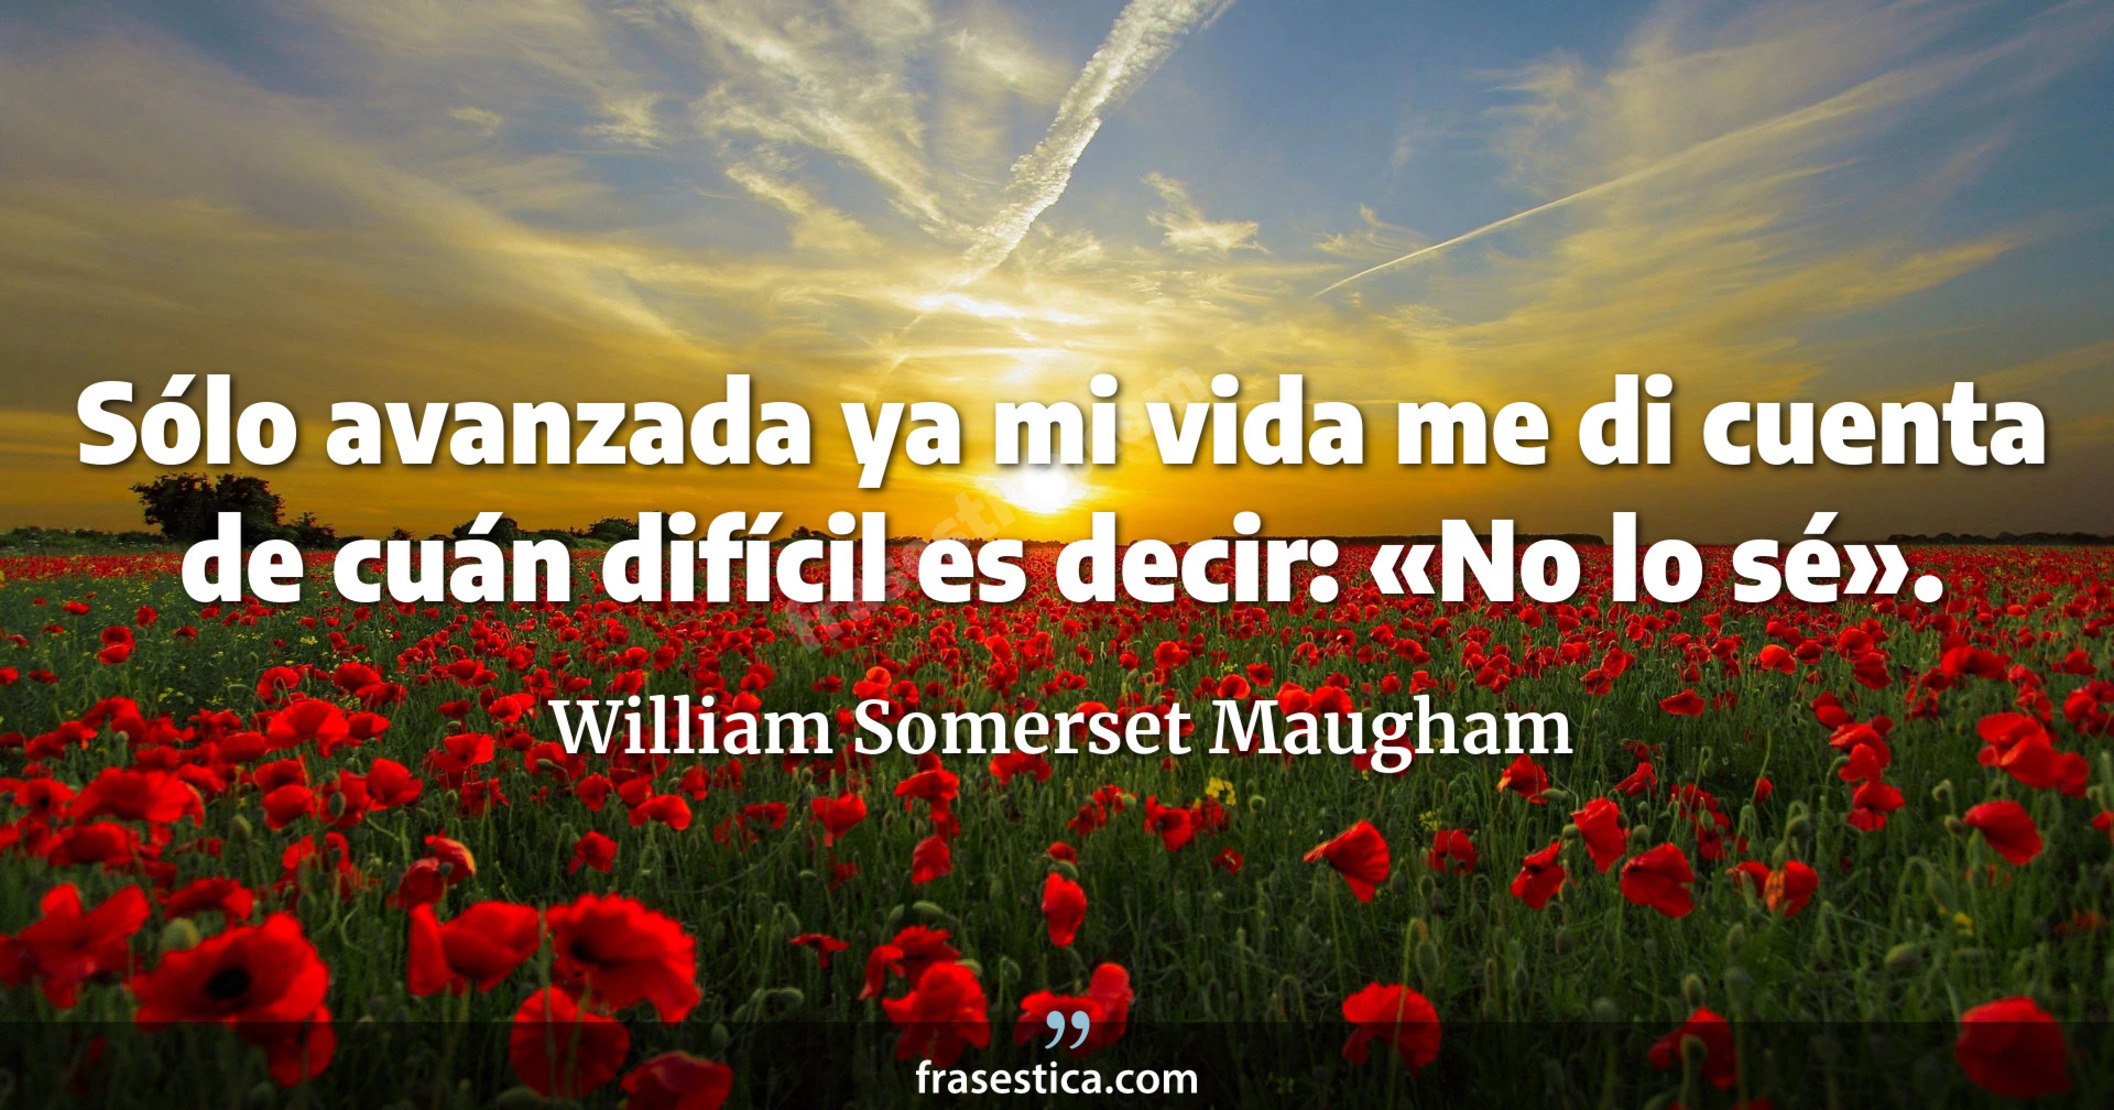 Sólo avanzada ya mi vida me di cuenta de cuán difícil es decir: «No lo sé». - William Somerset Maugham